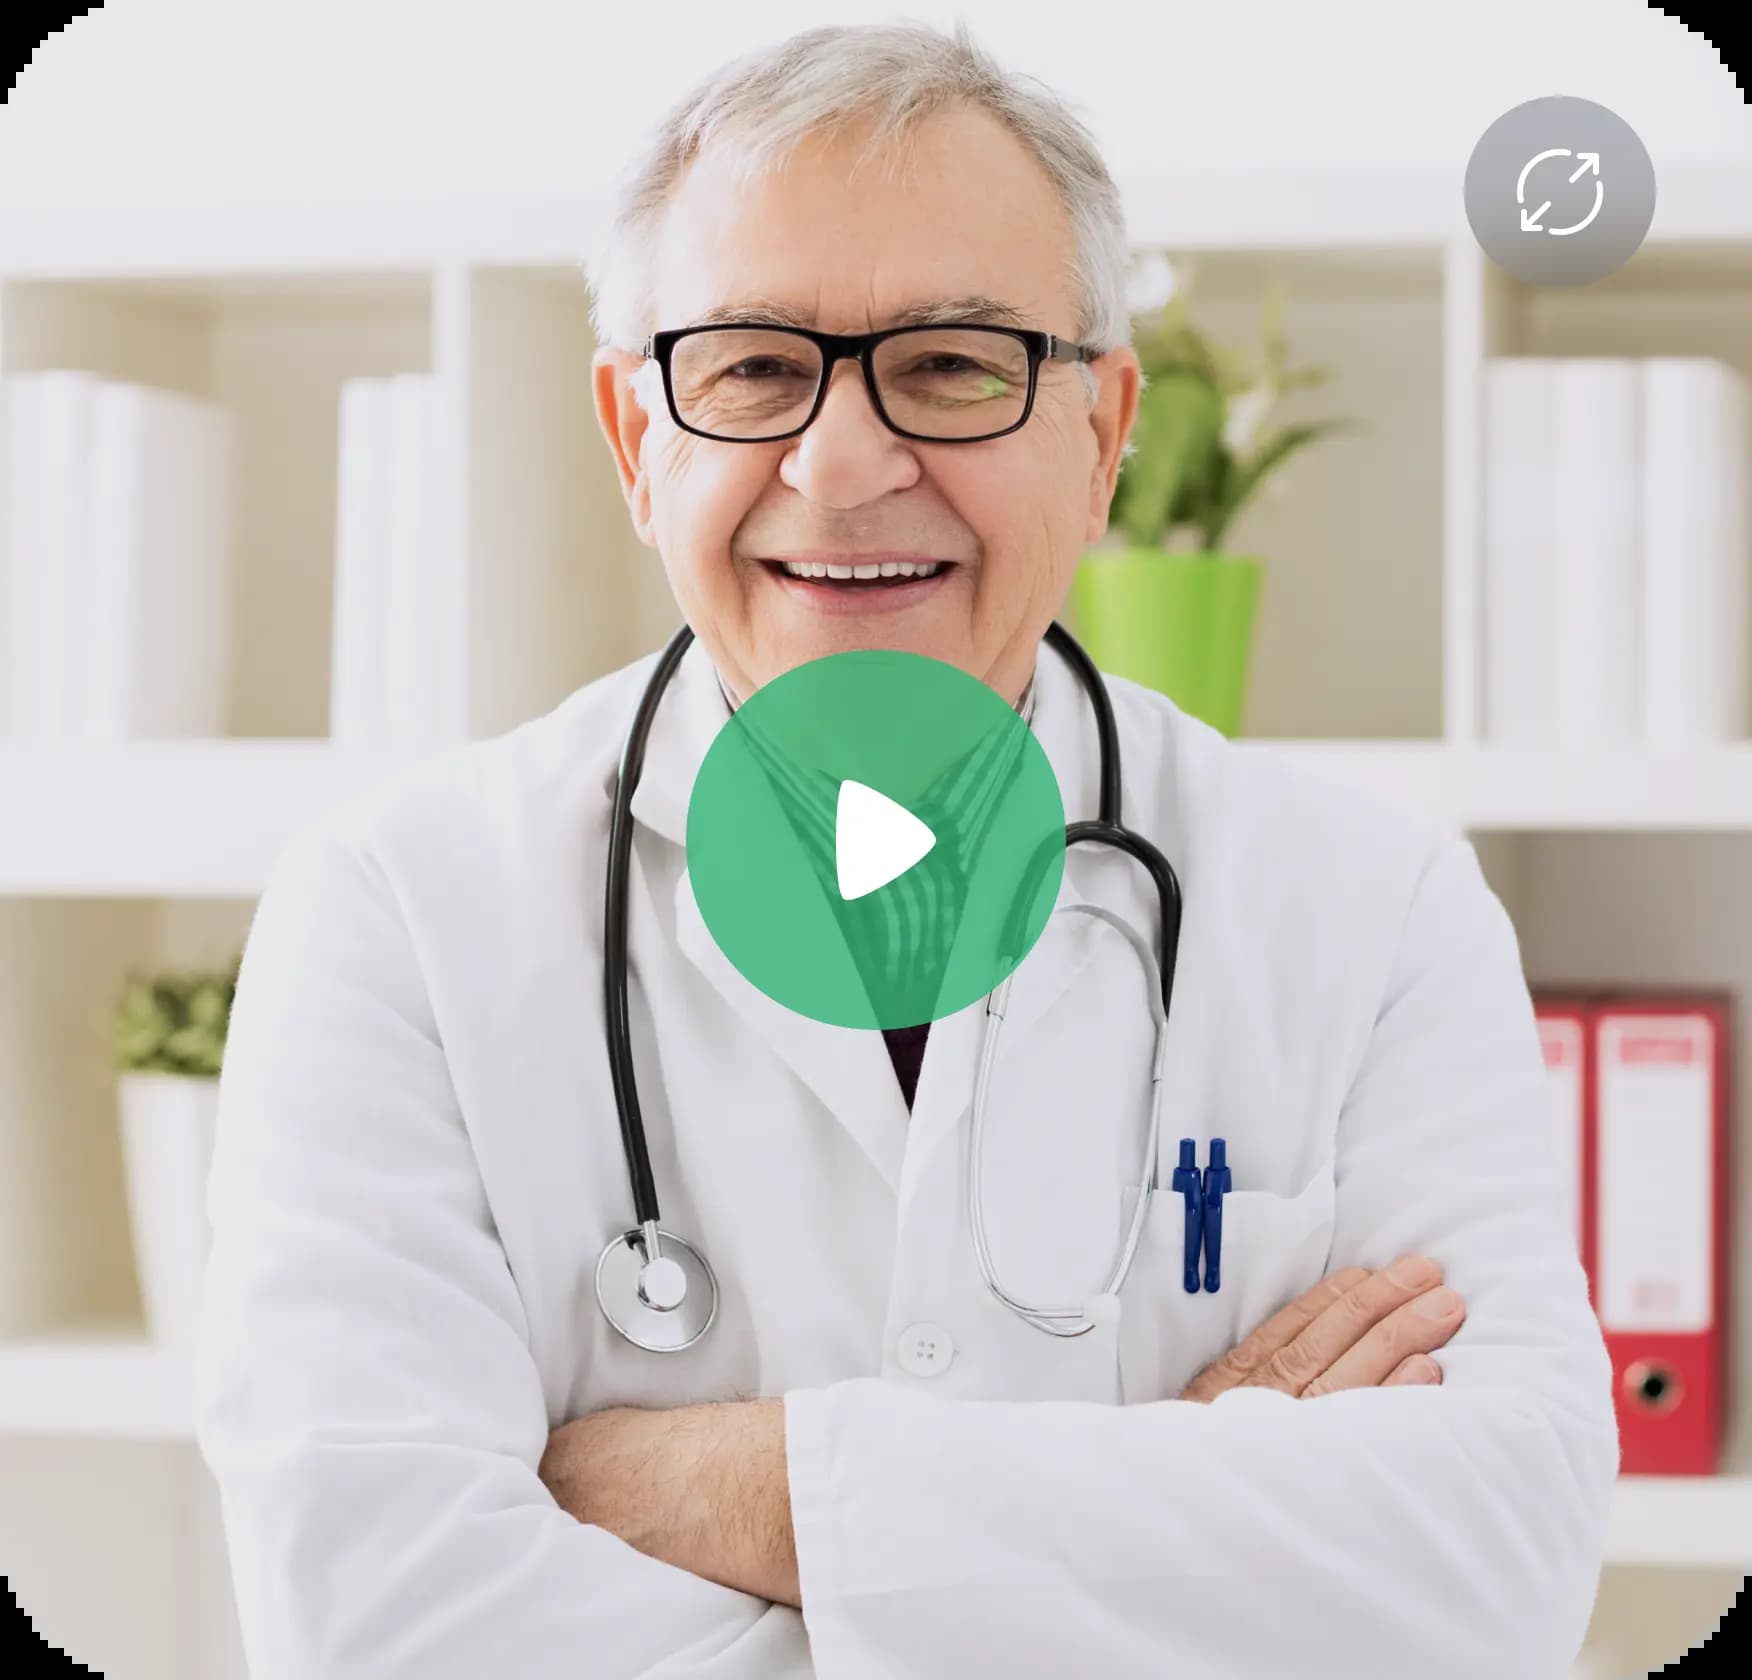 Virtuelle Gesundheitsversorgung: Arzt und Patient führen über eine Online-Plattform eine Videosprechstunde durch.